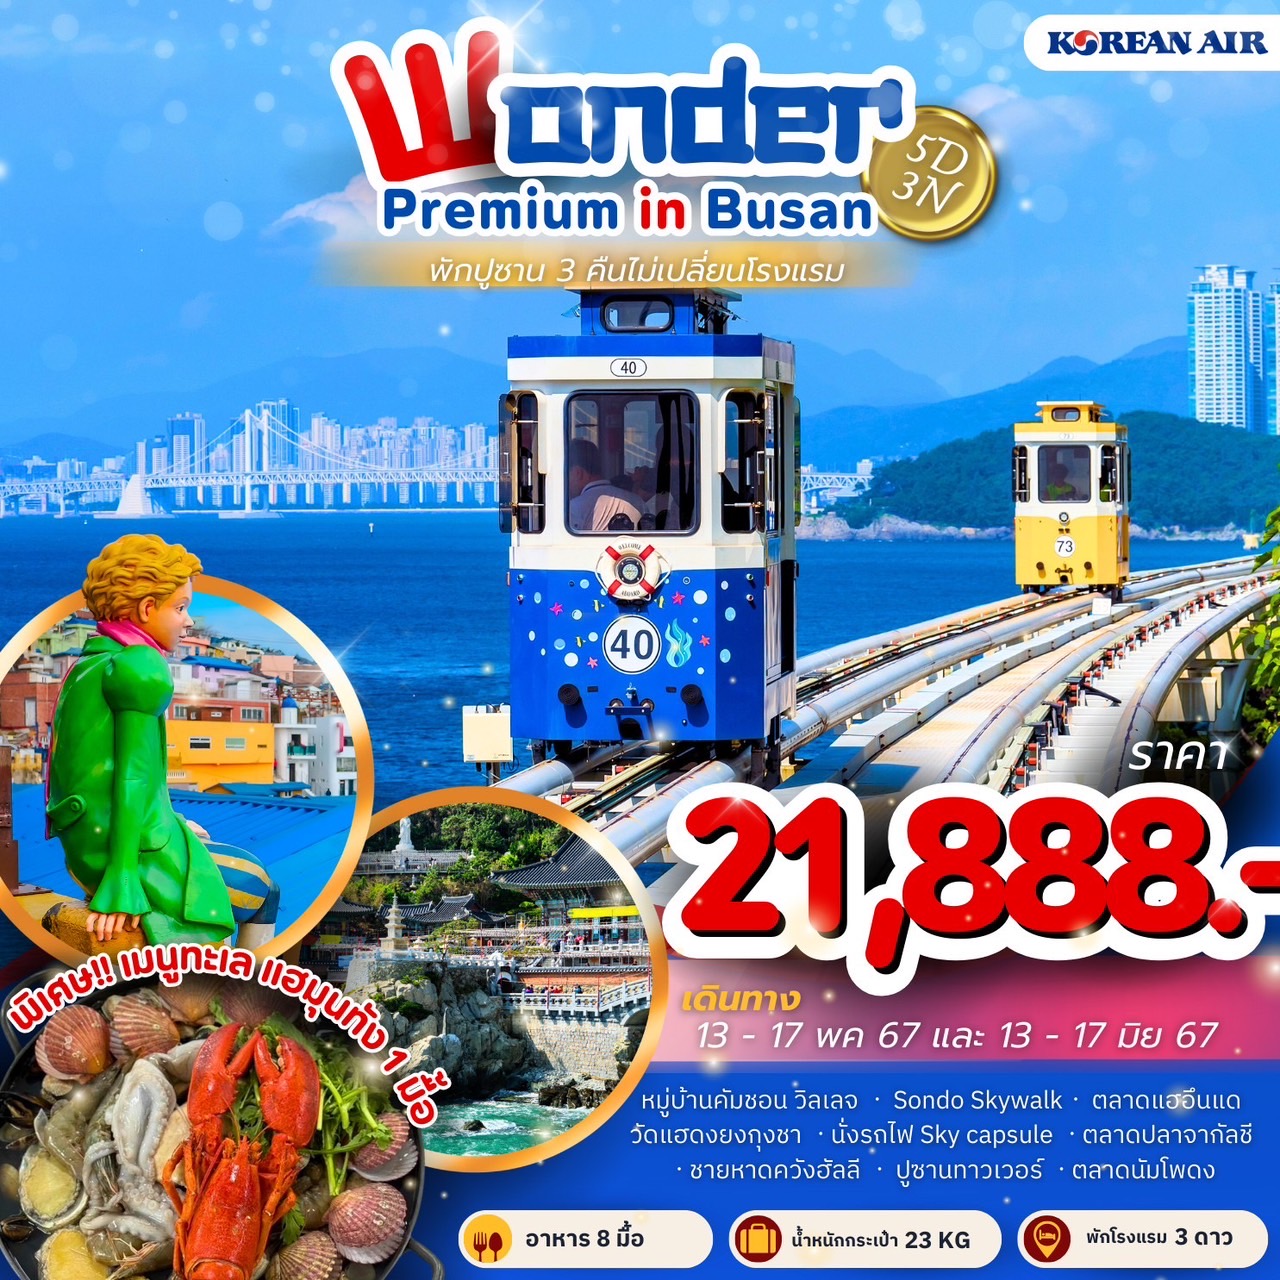 ทัวร์เกาหลี Wonder Premium in Busan 5วัน 3คืน (KE)